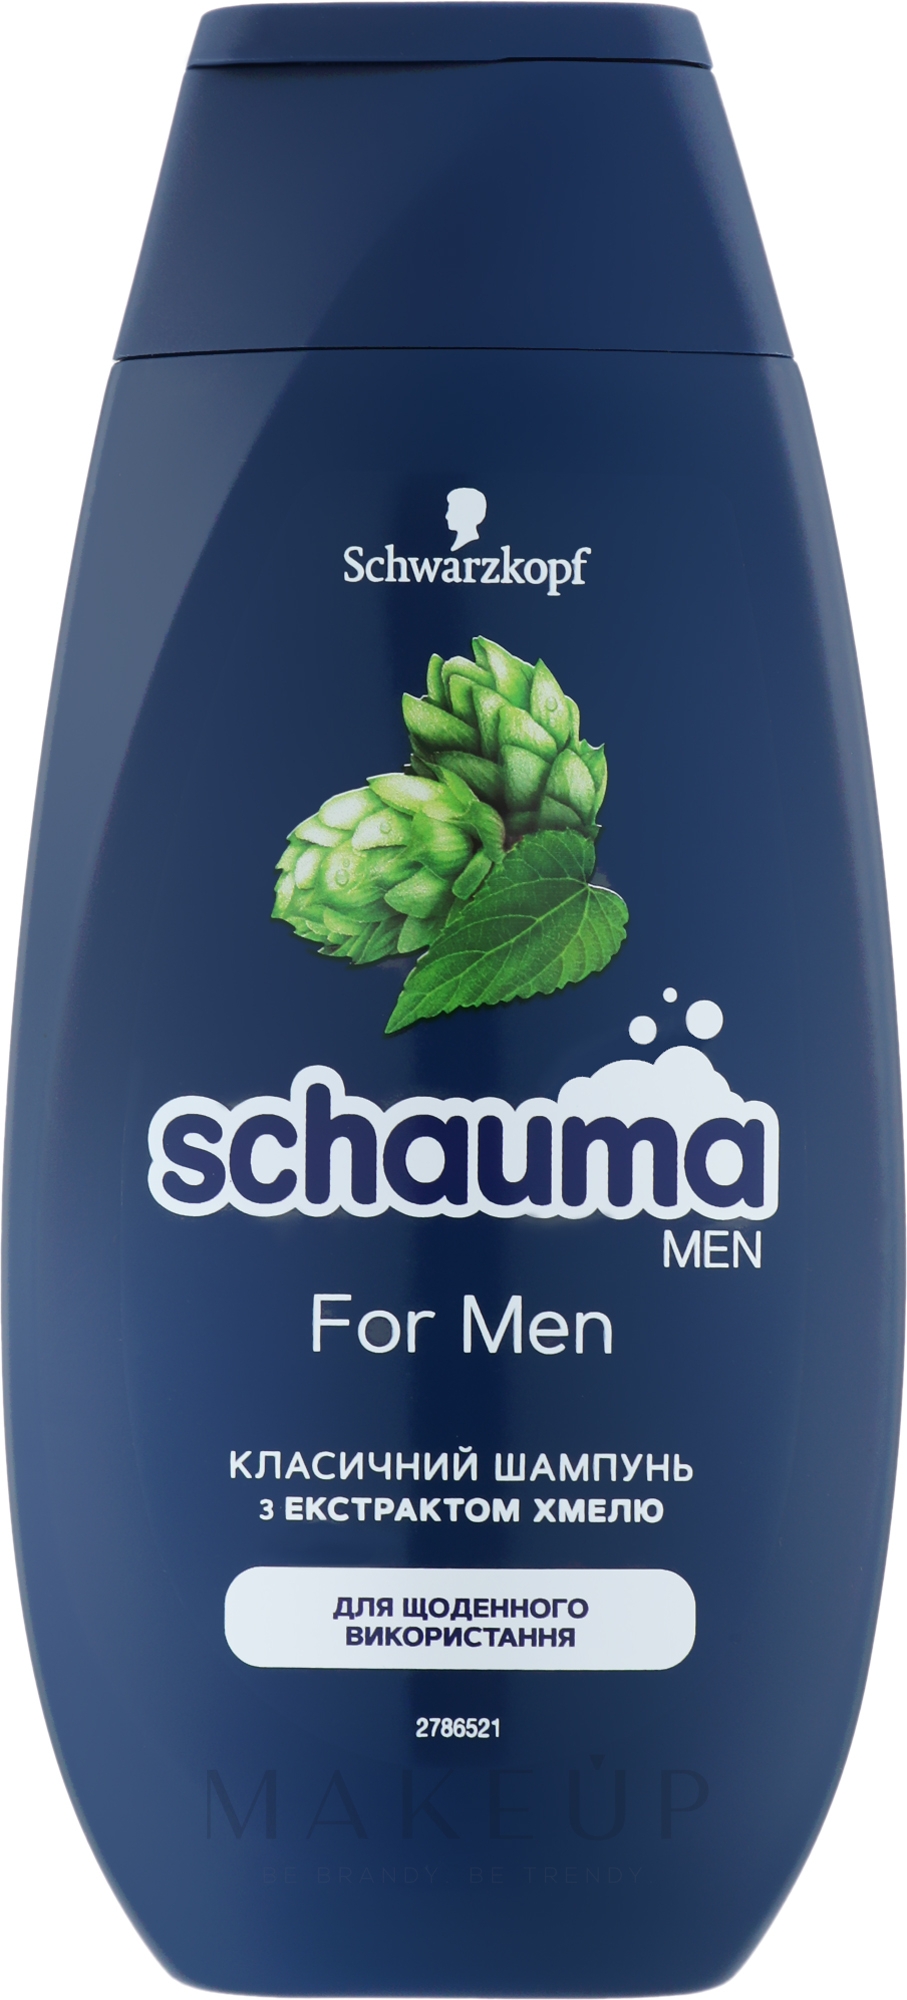 Shampoo mit Hopfen-Extrakt für Männer - Schwarzkopf Schauma Men Shampoo With Hops Extract Without Silicone — Foto 250 ml